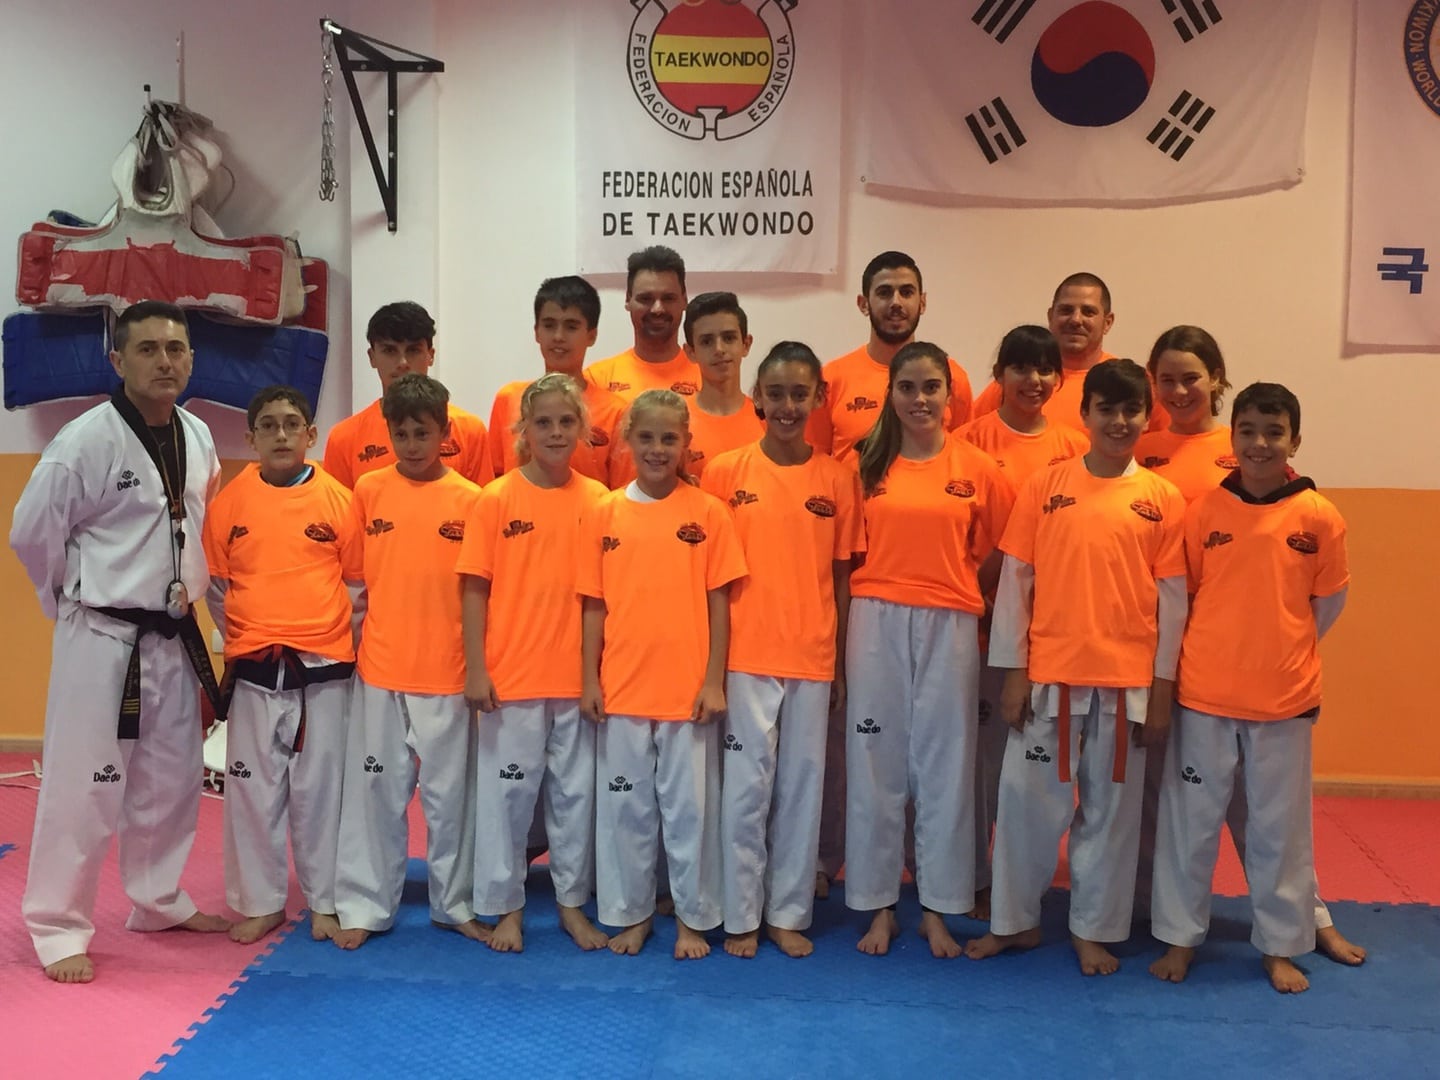 Felicitación al Club Taebek por su éxito en el Campeonato de España de Taekwondo